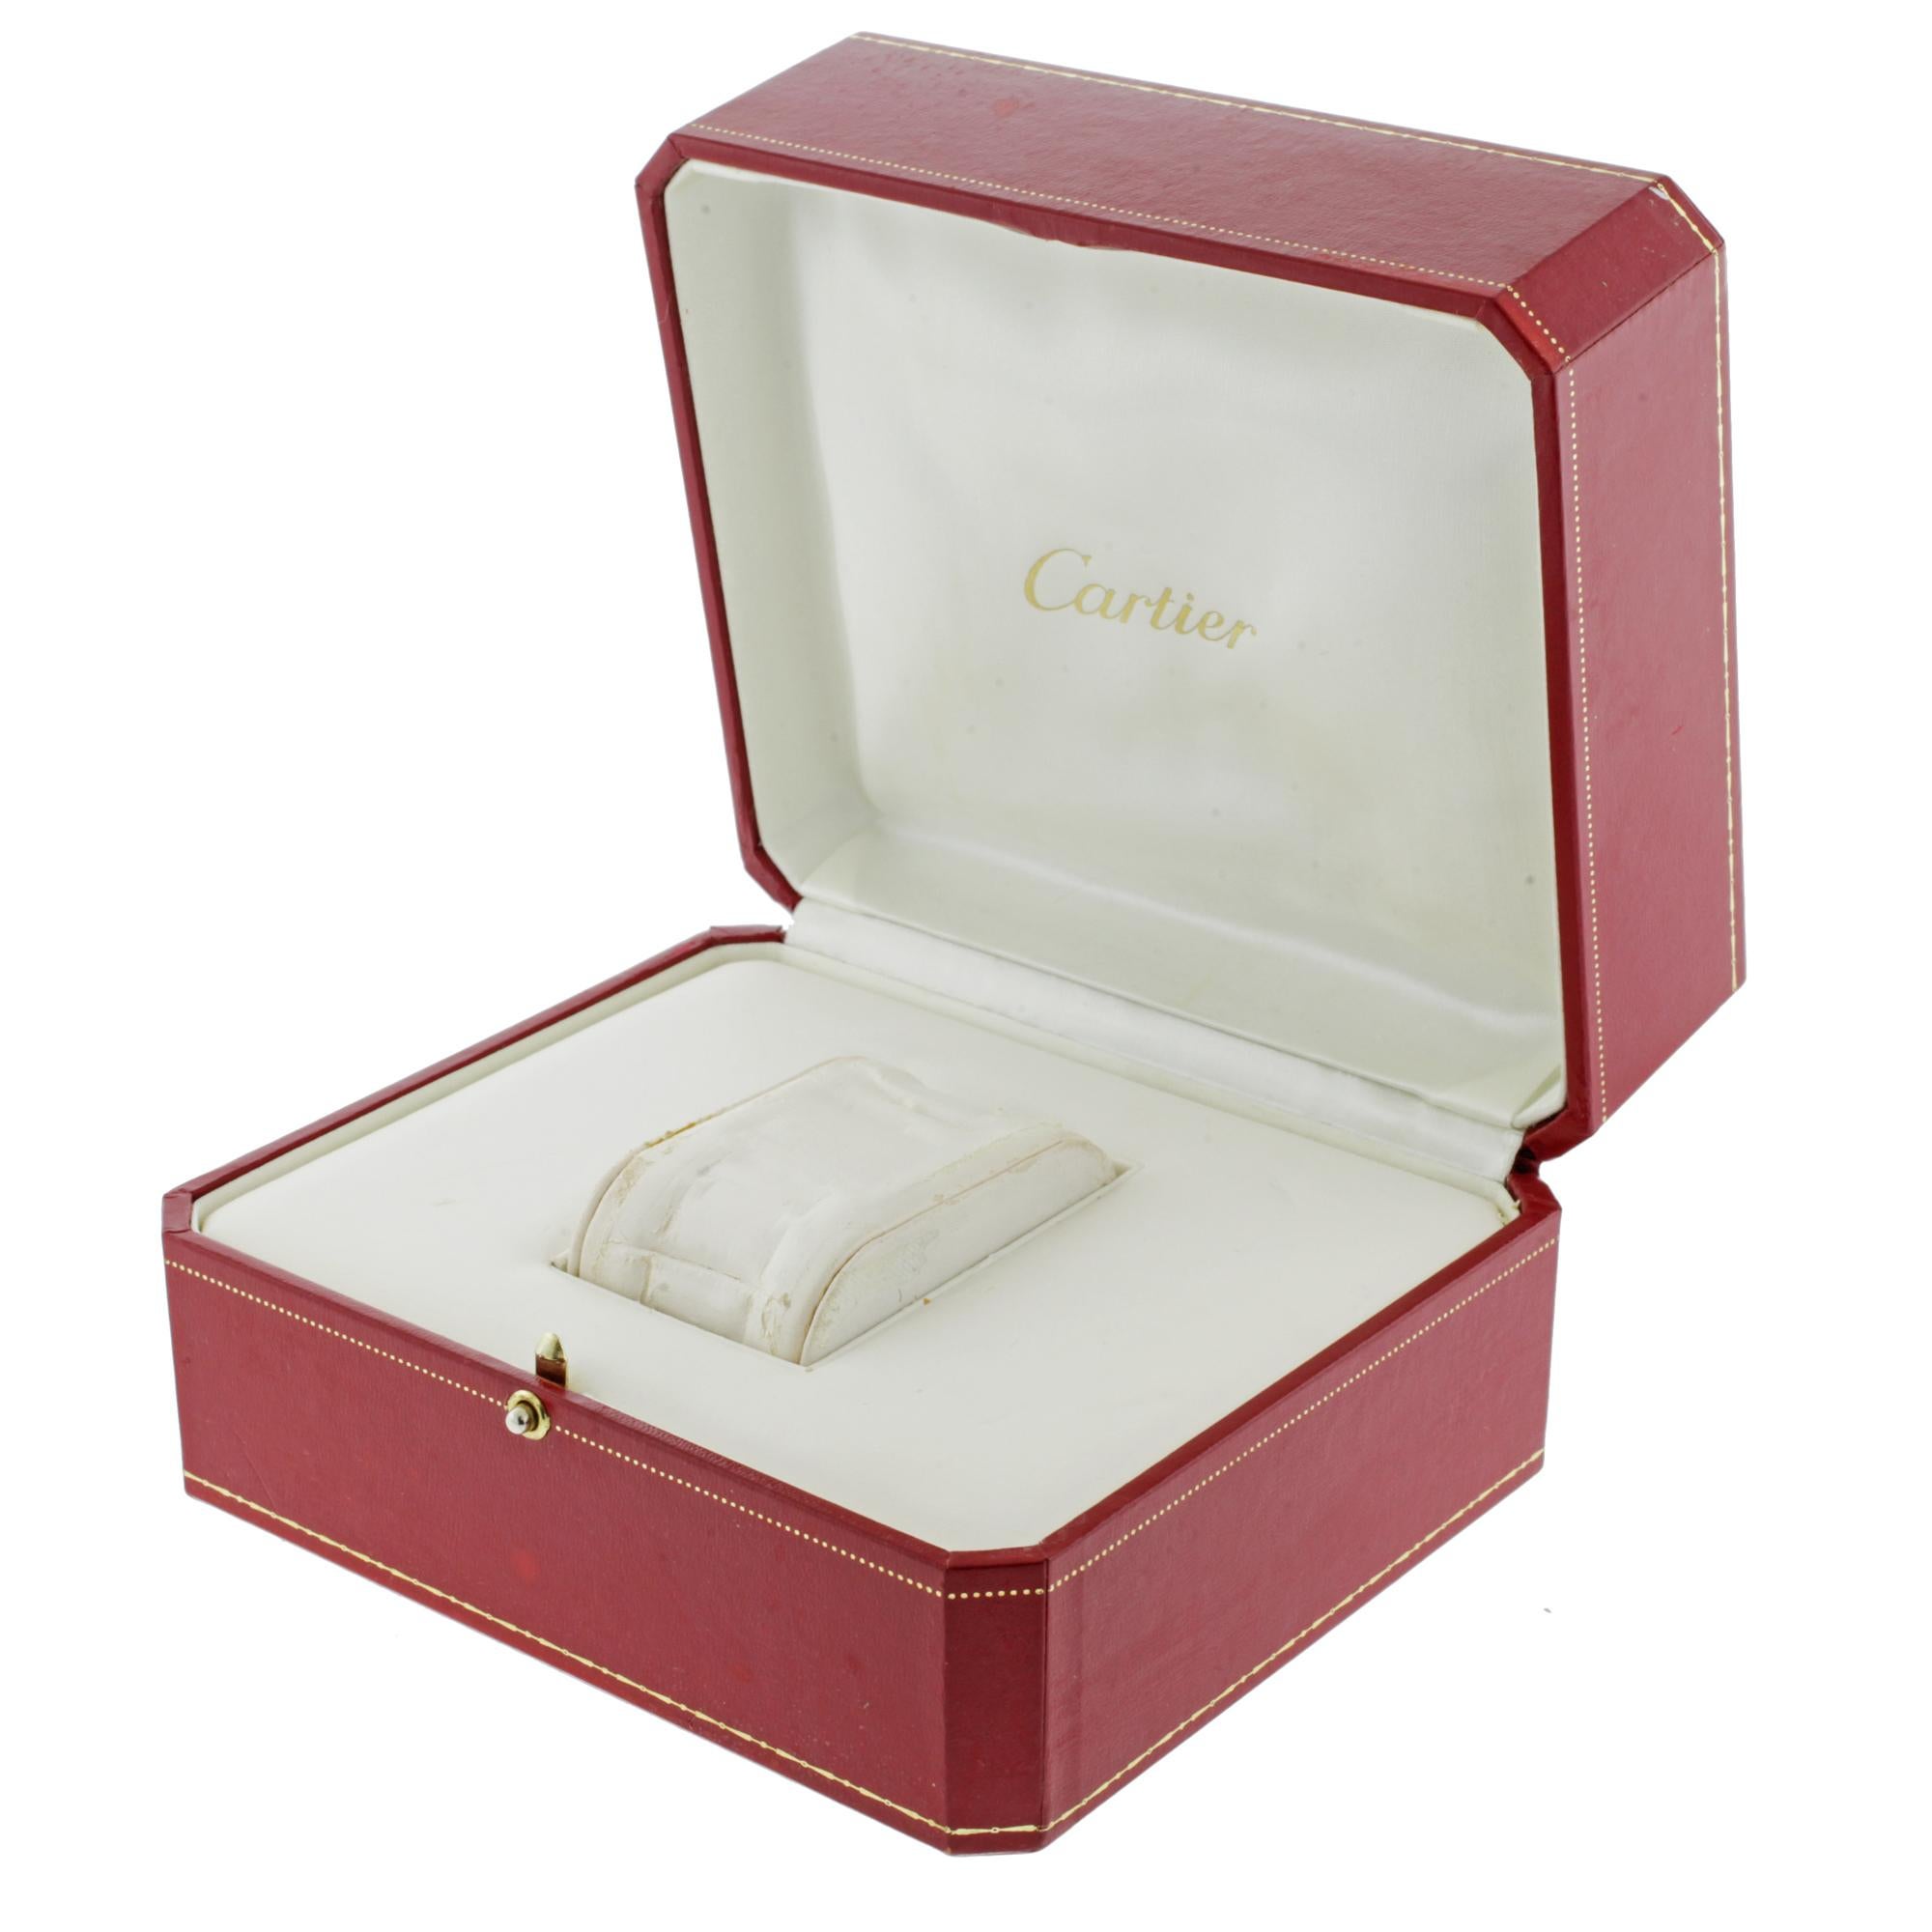 Cartier Tank Francaise Square Silver Dial Steel Quartz Ladies Watch W51008Q3 4